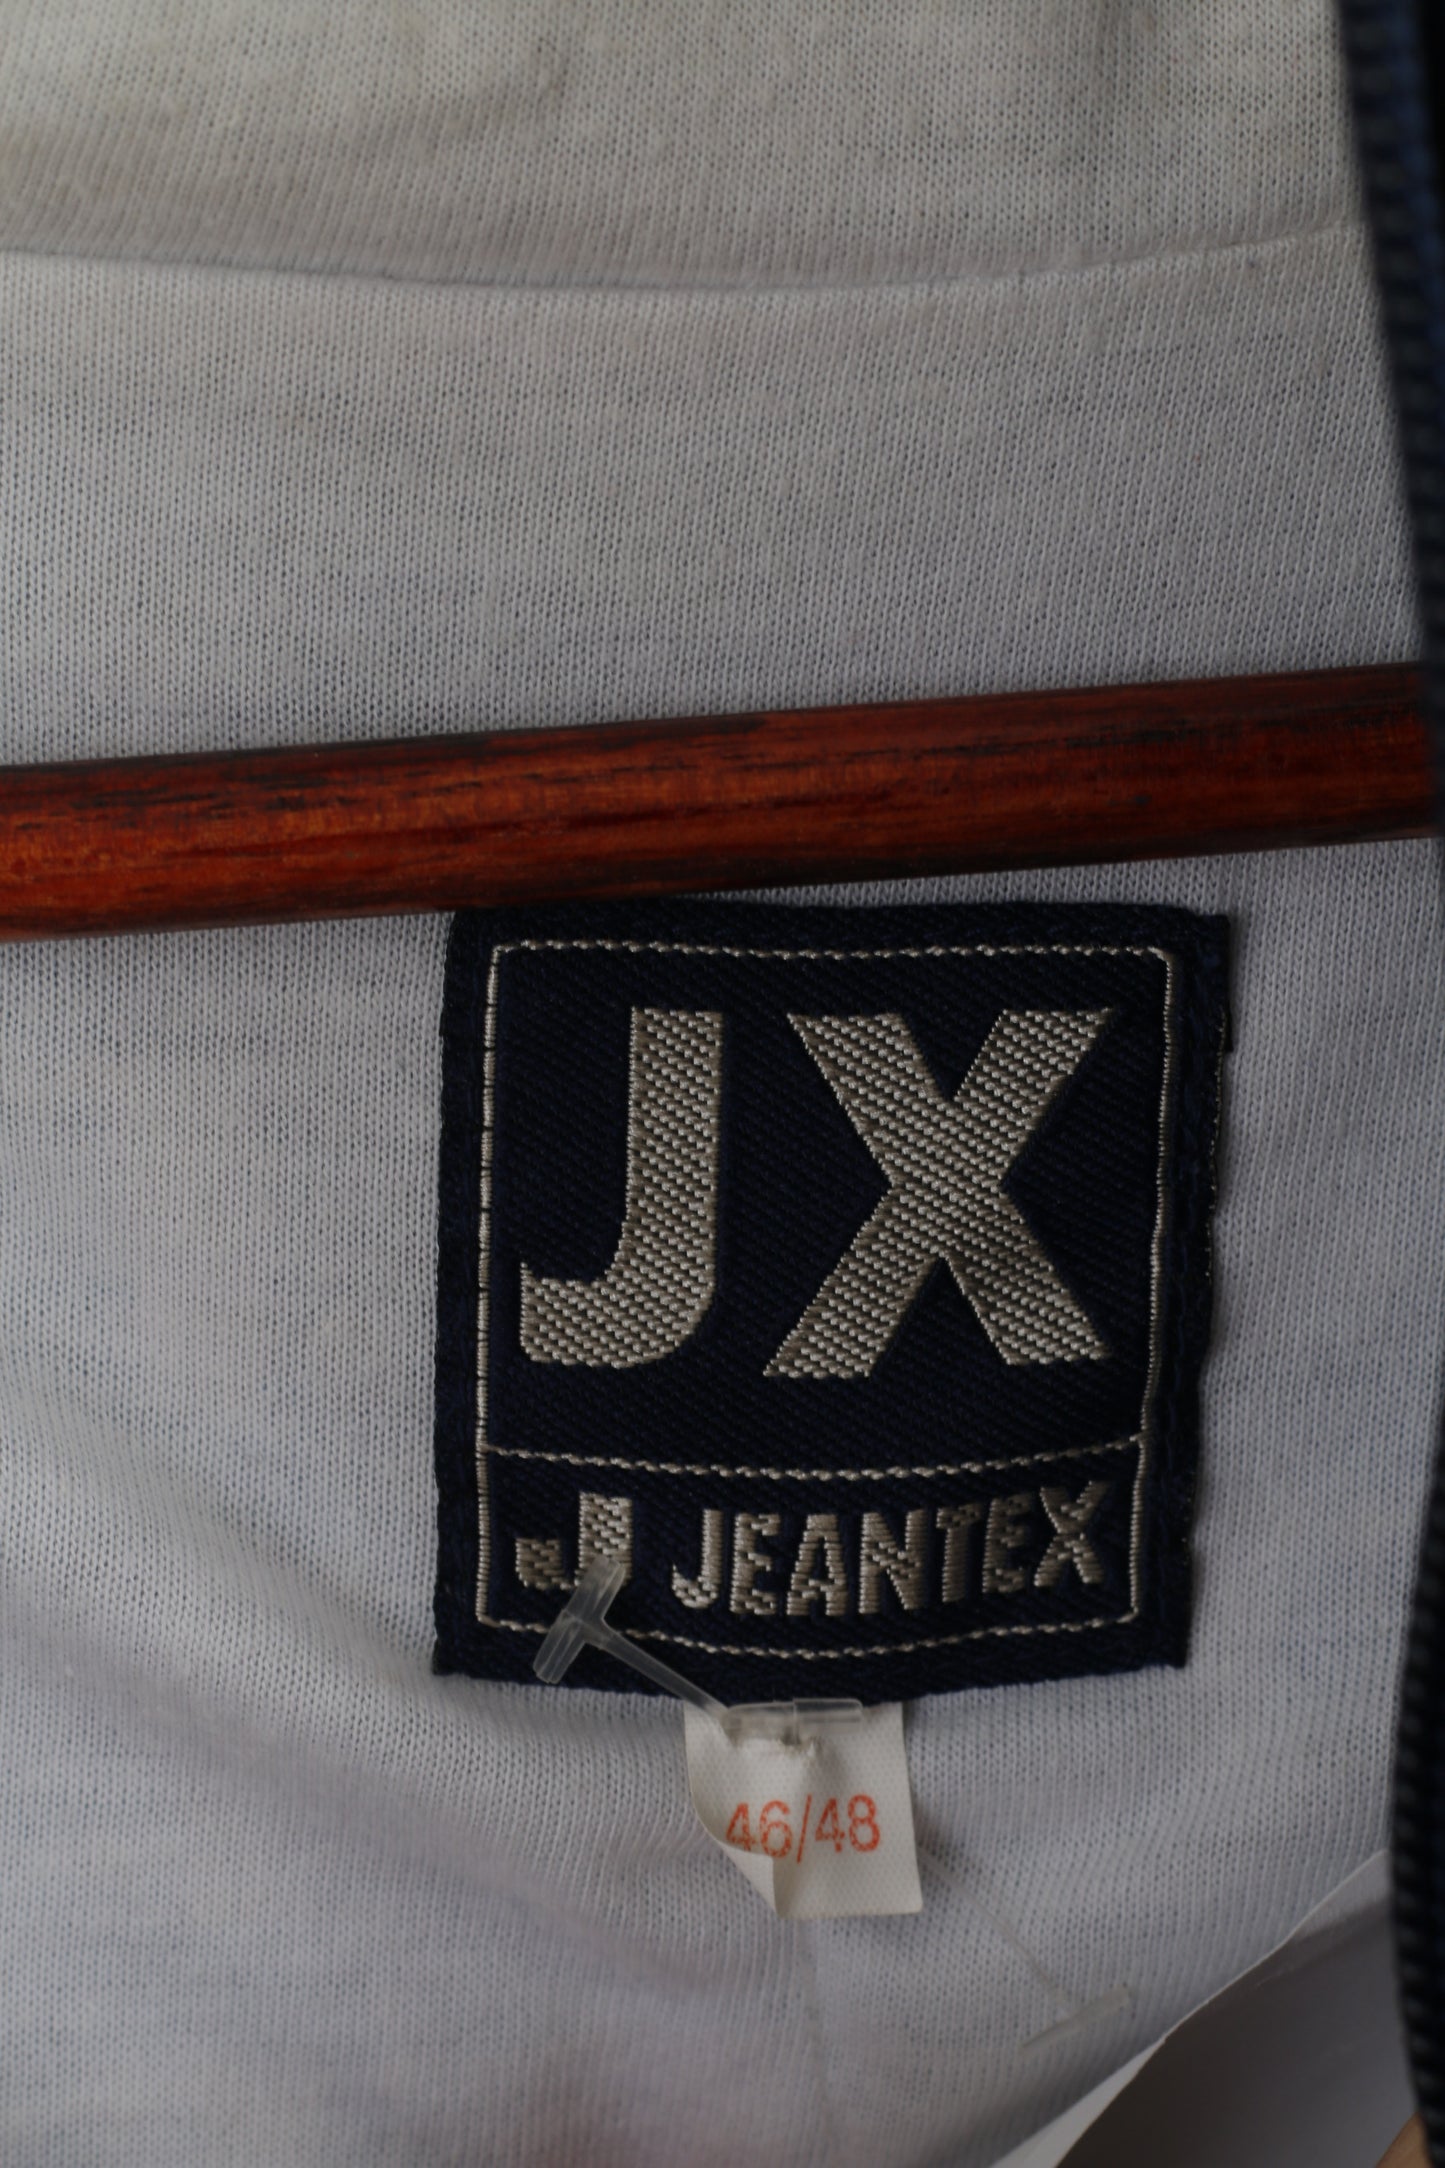 Giacca Jeantex da uomo XL 46/48 blu con cappuccio in nylon impermeabile con cerniera festival